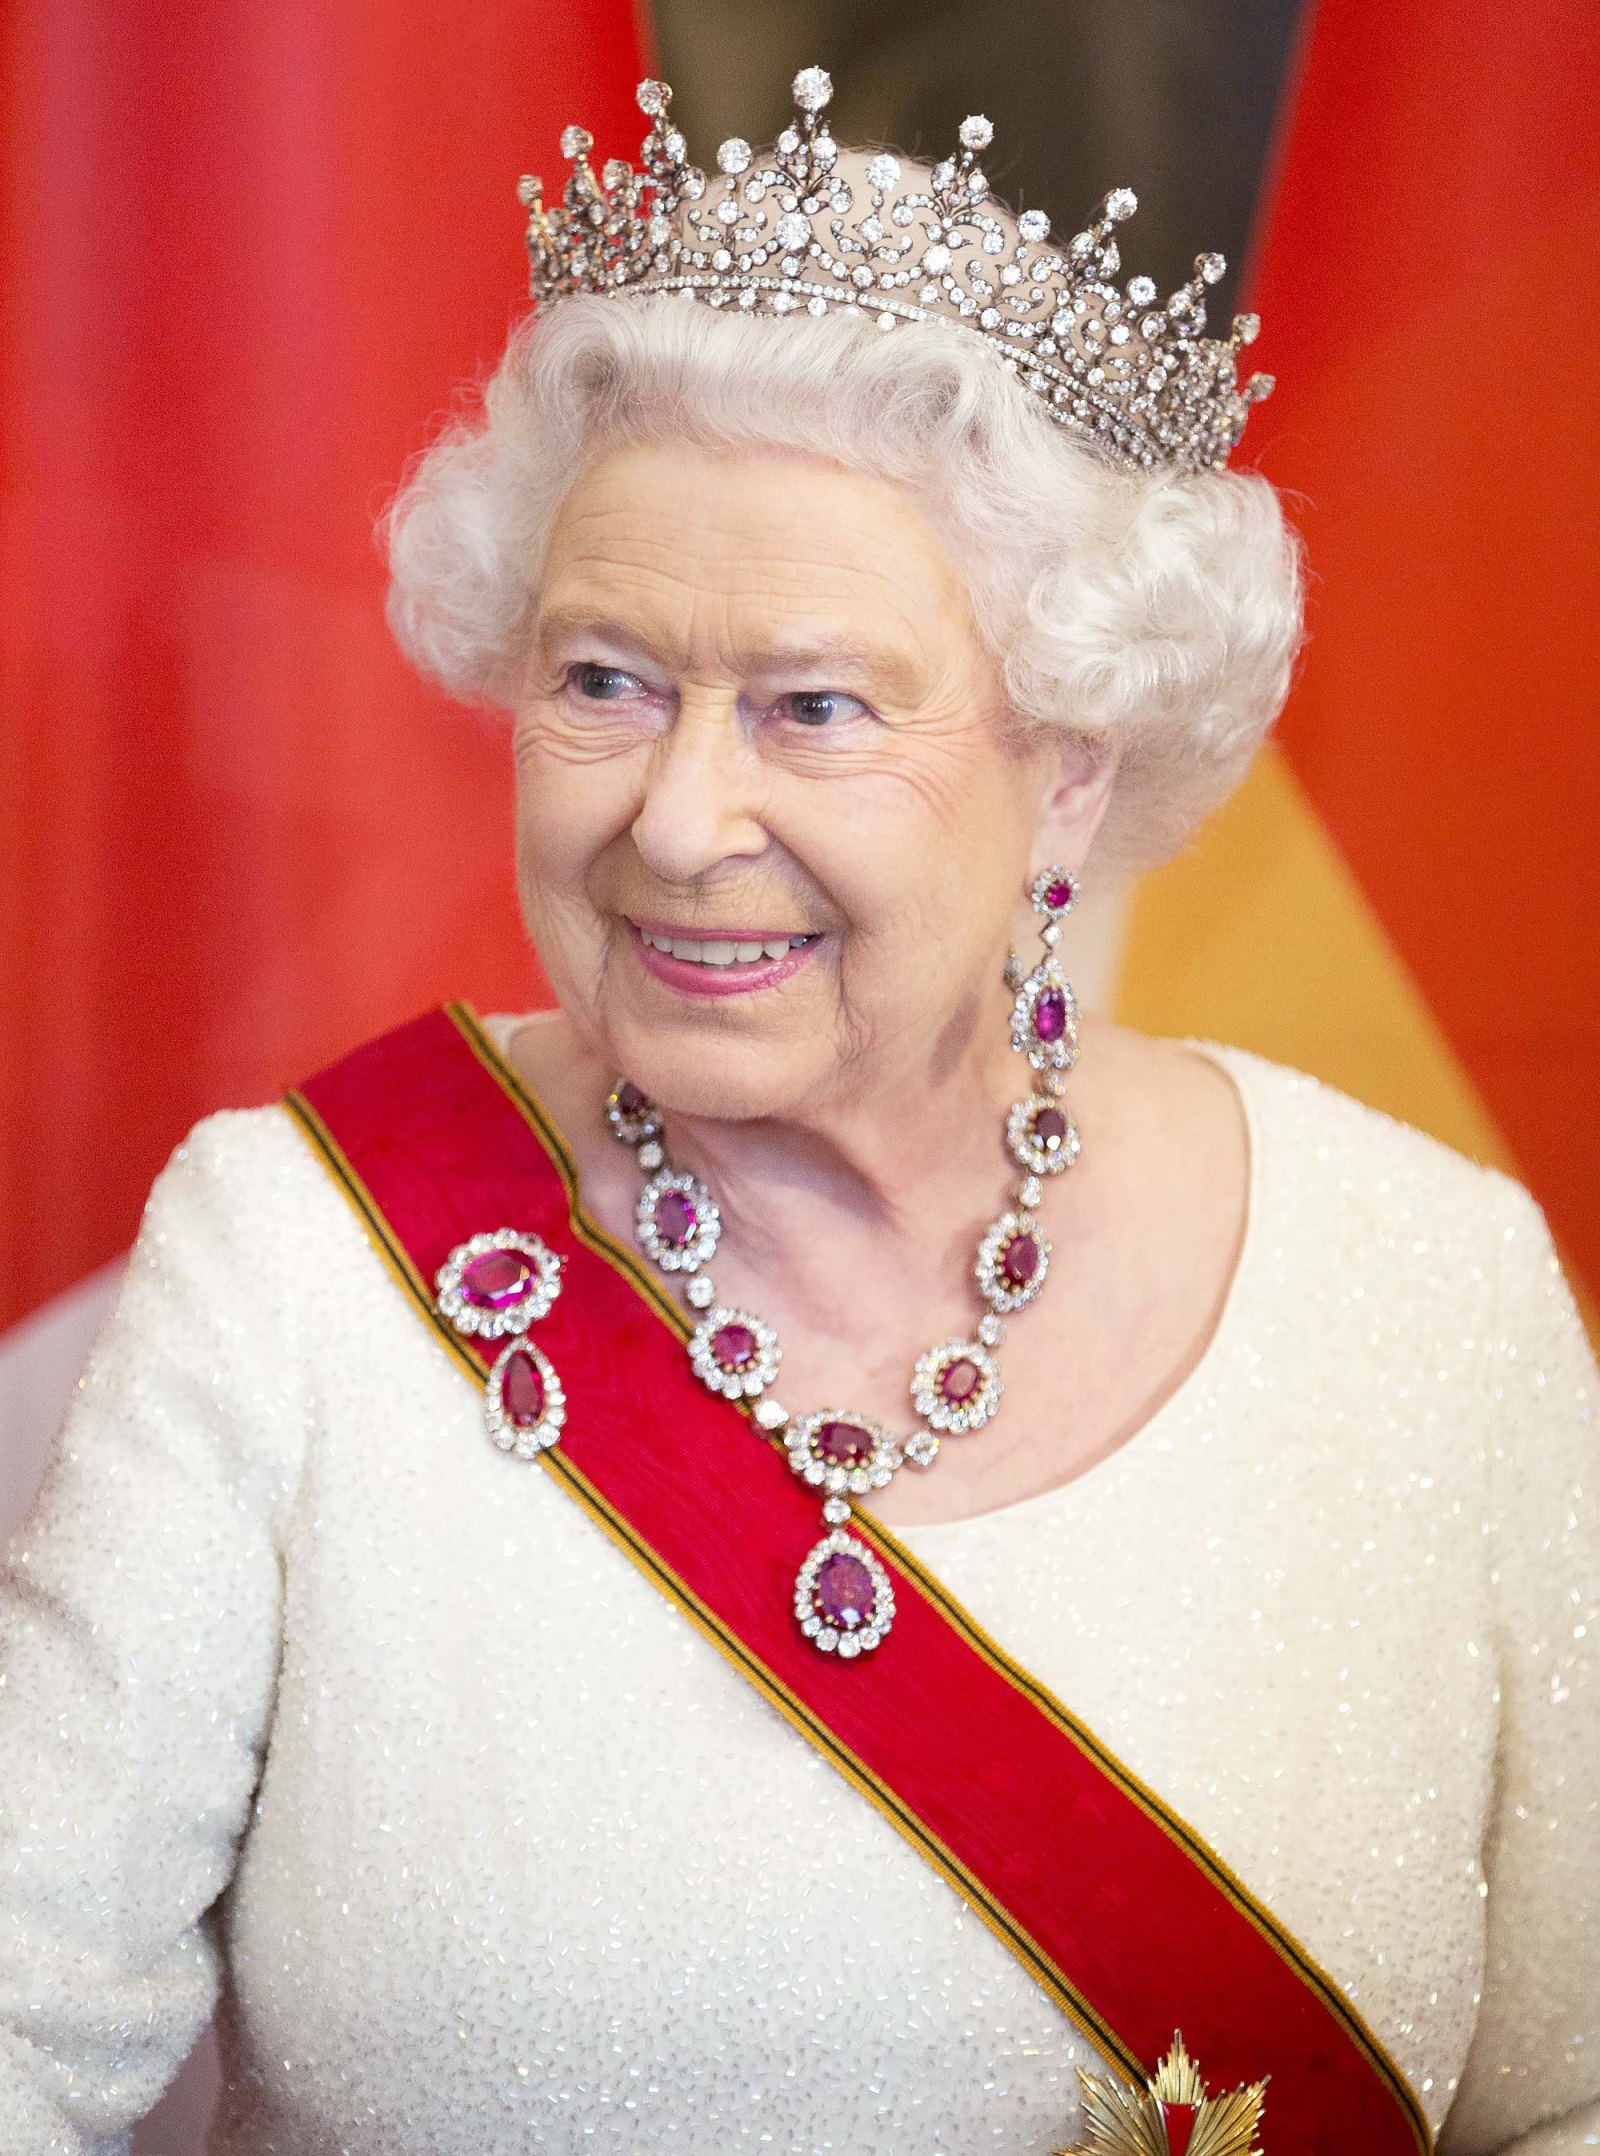 The Intricacies of Tiara-Lending in Queen Elizabeth II’s Court 